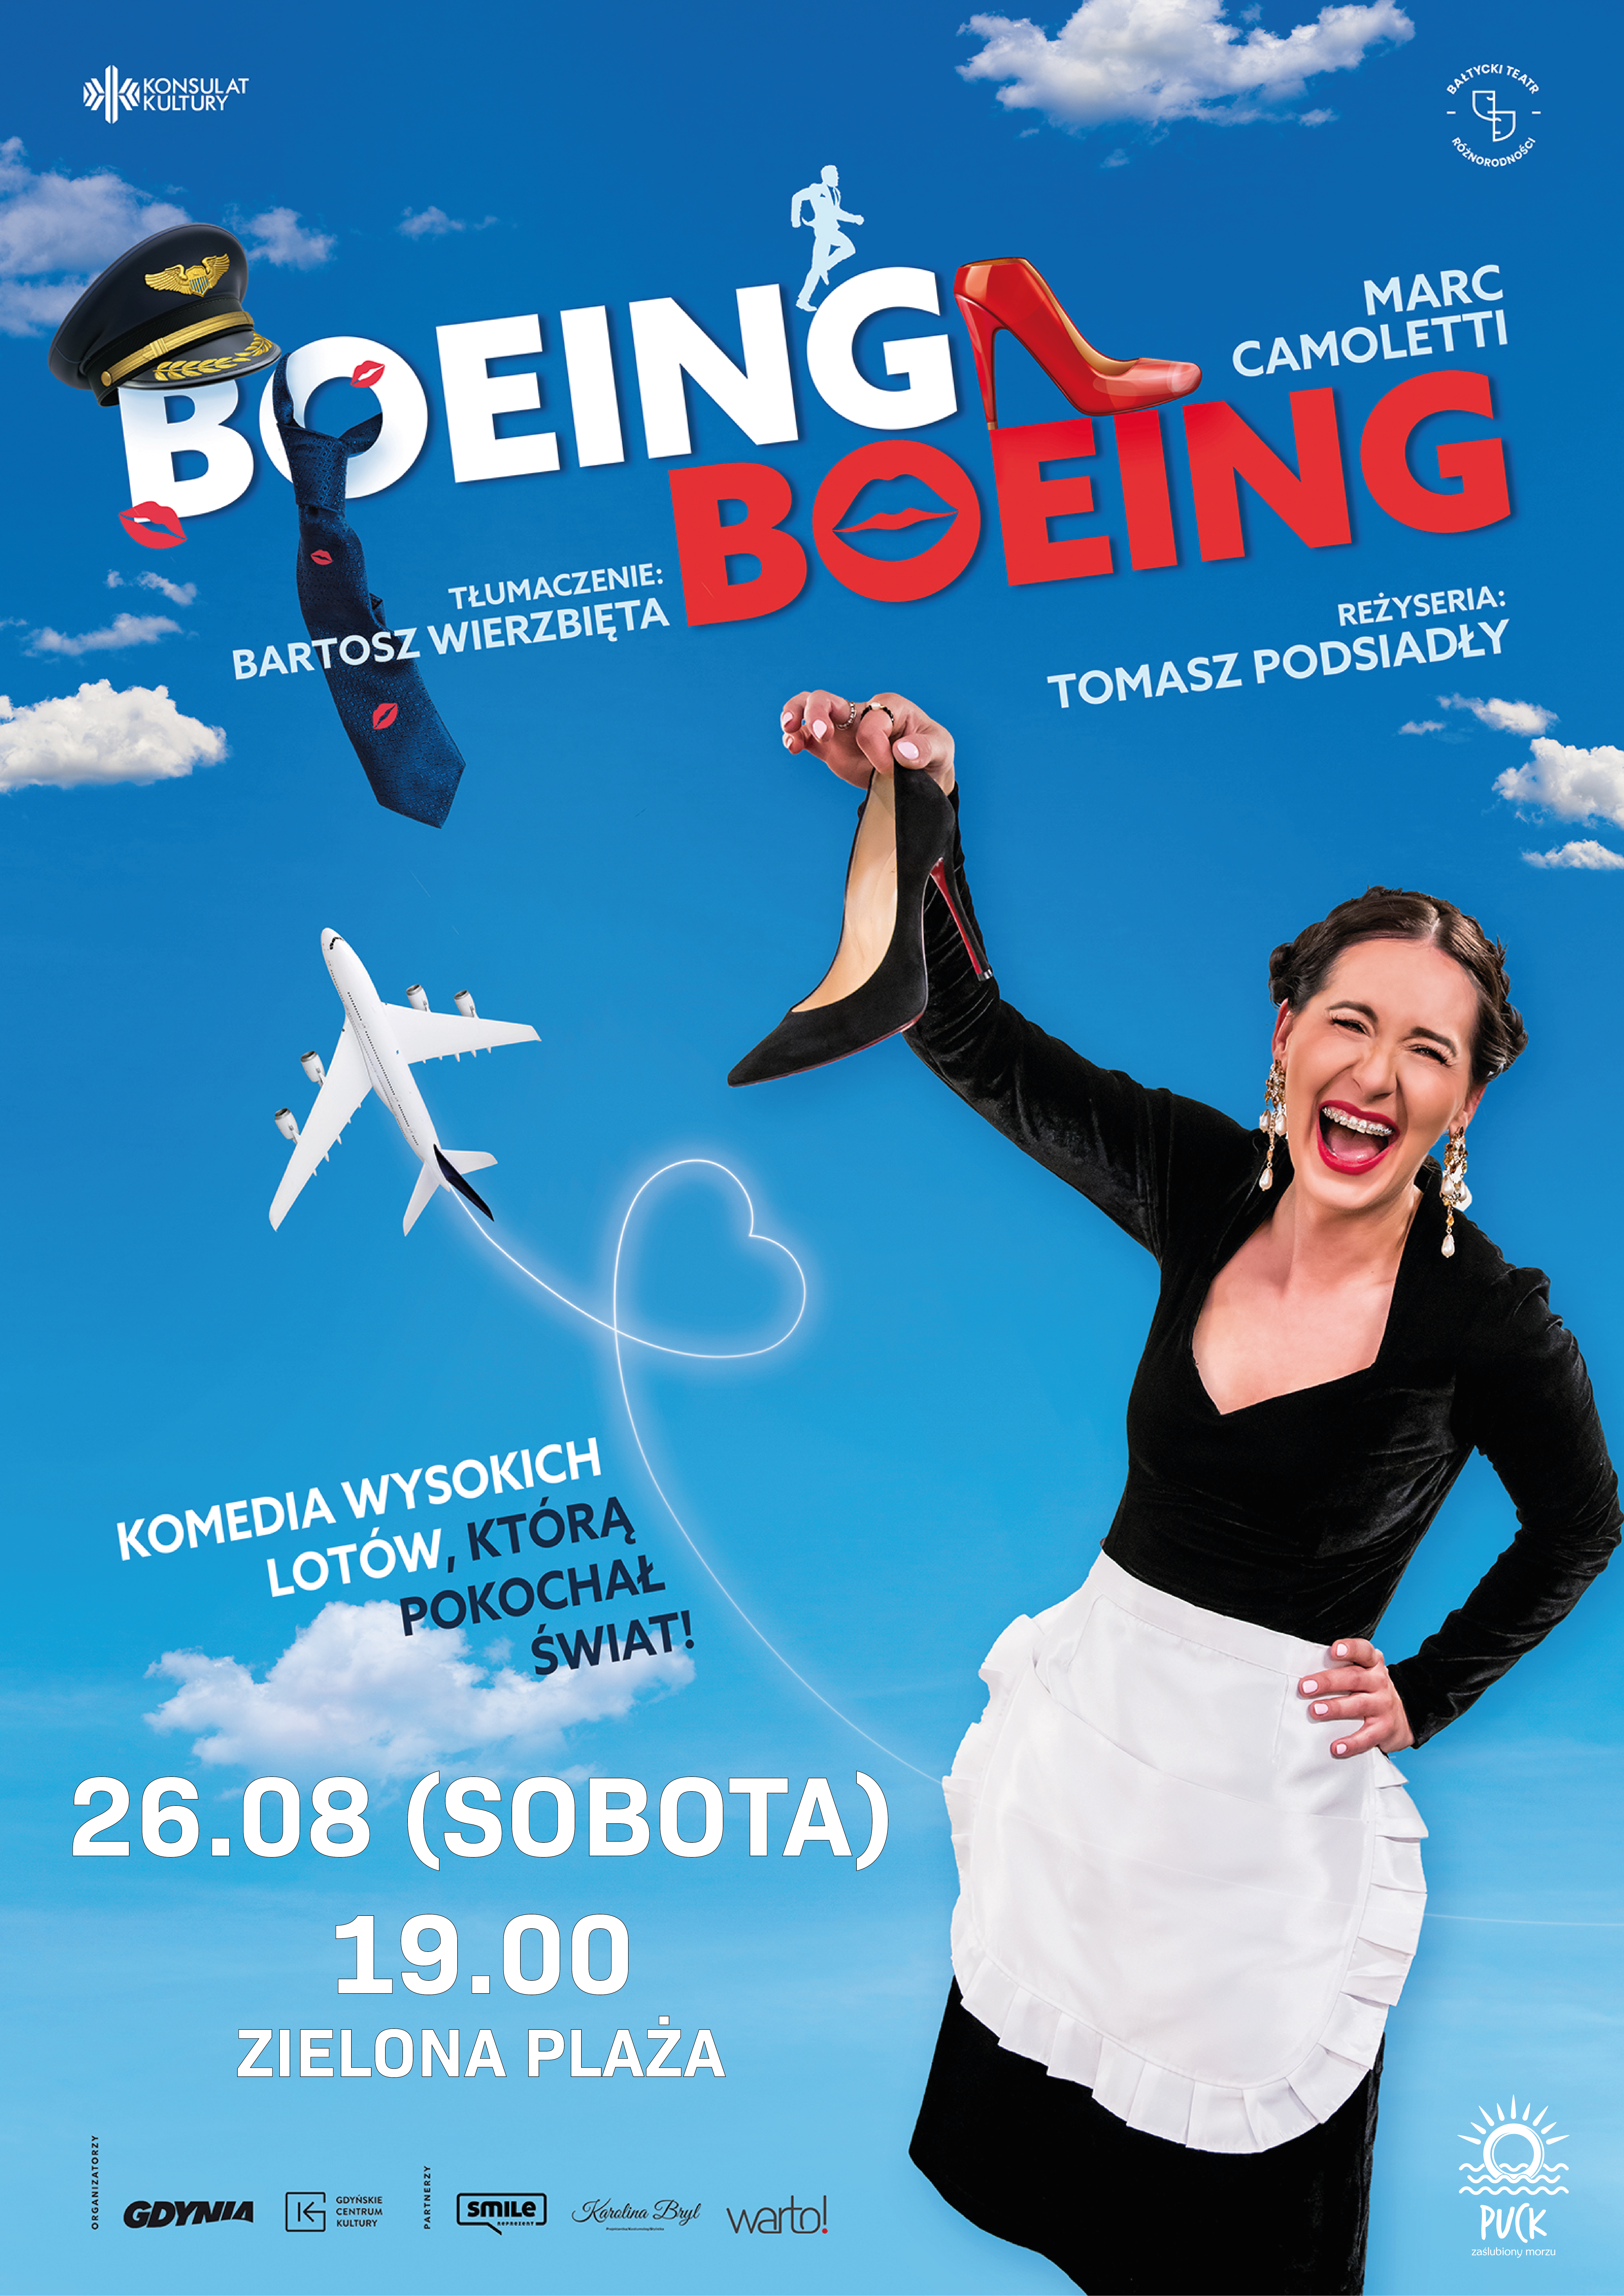 Podsiadły_26-08_-_Boeing,_boeing